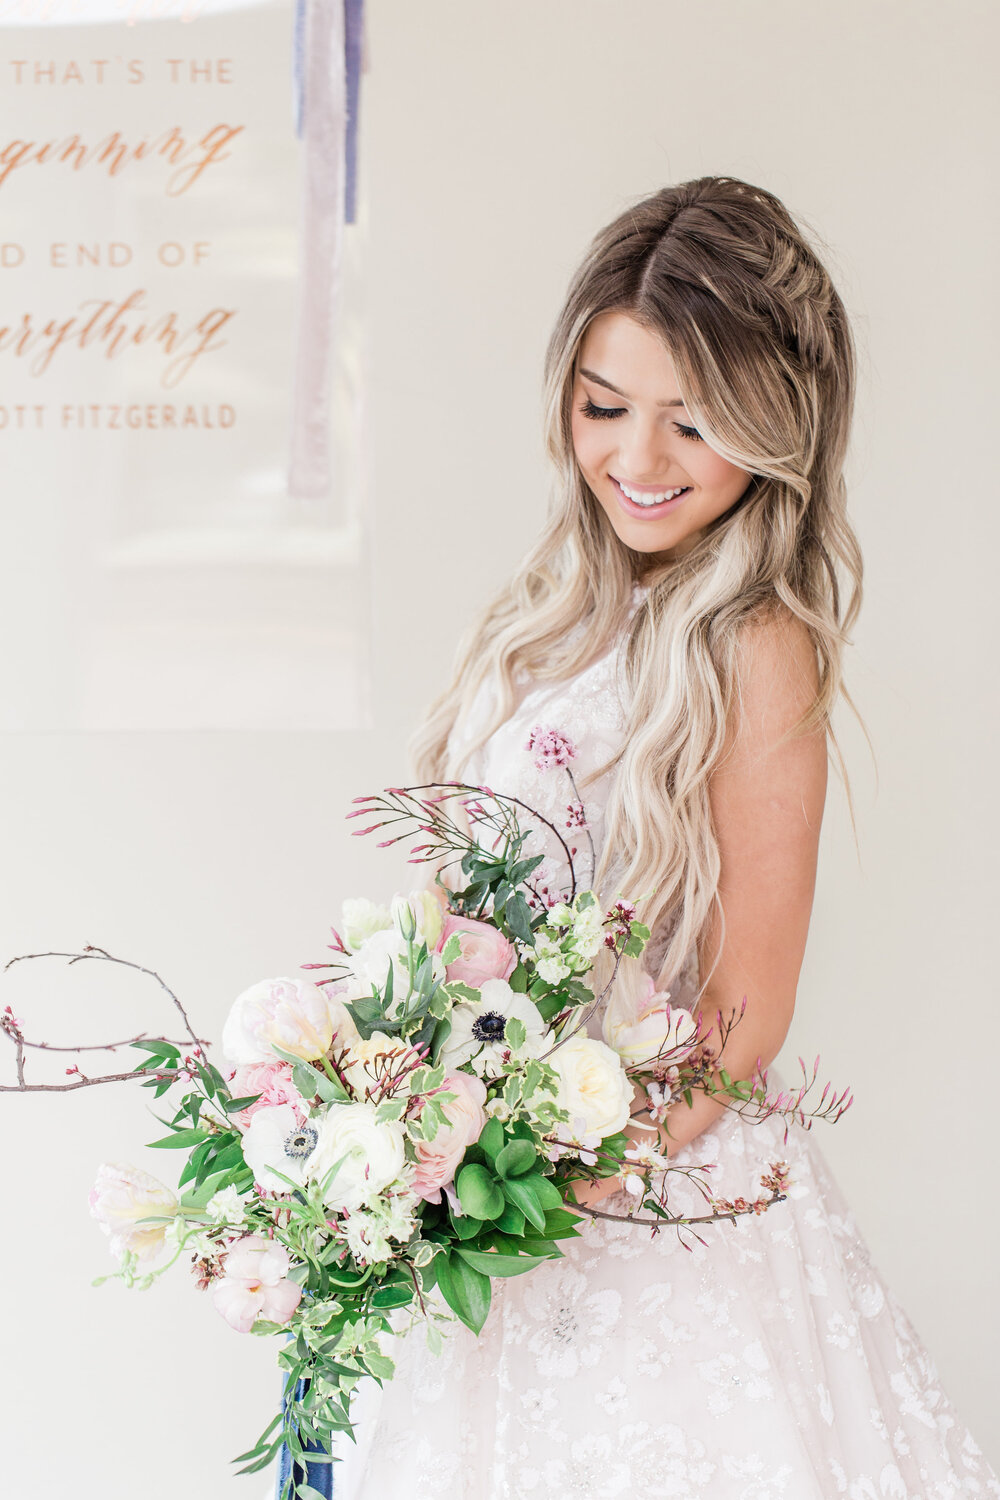 Violette-fleurs-event-design-florist-roseville-ashley-baumgartner-photography-planner-Beautiful-bridal-dress-bouquet.jpg